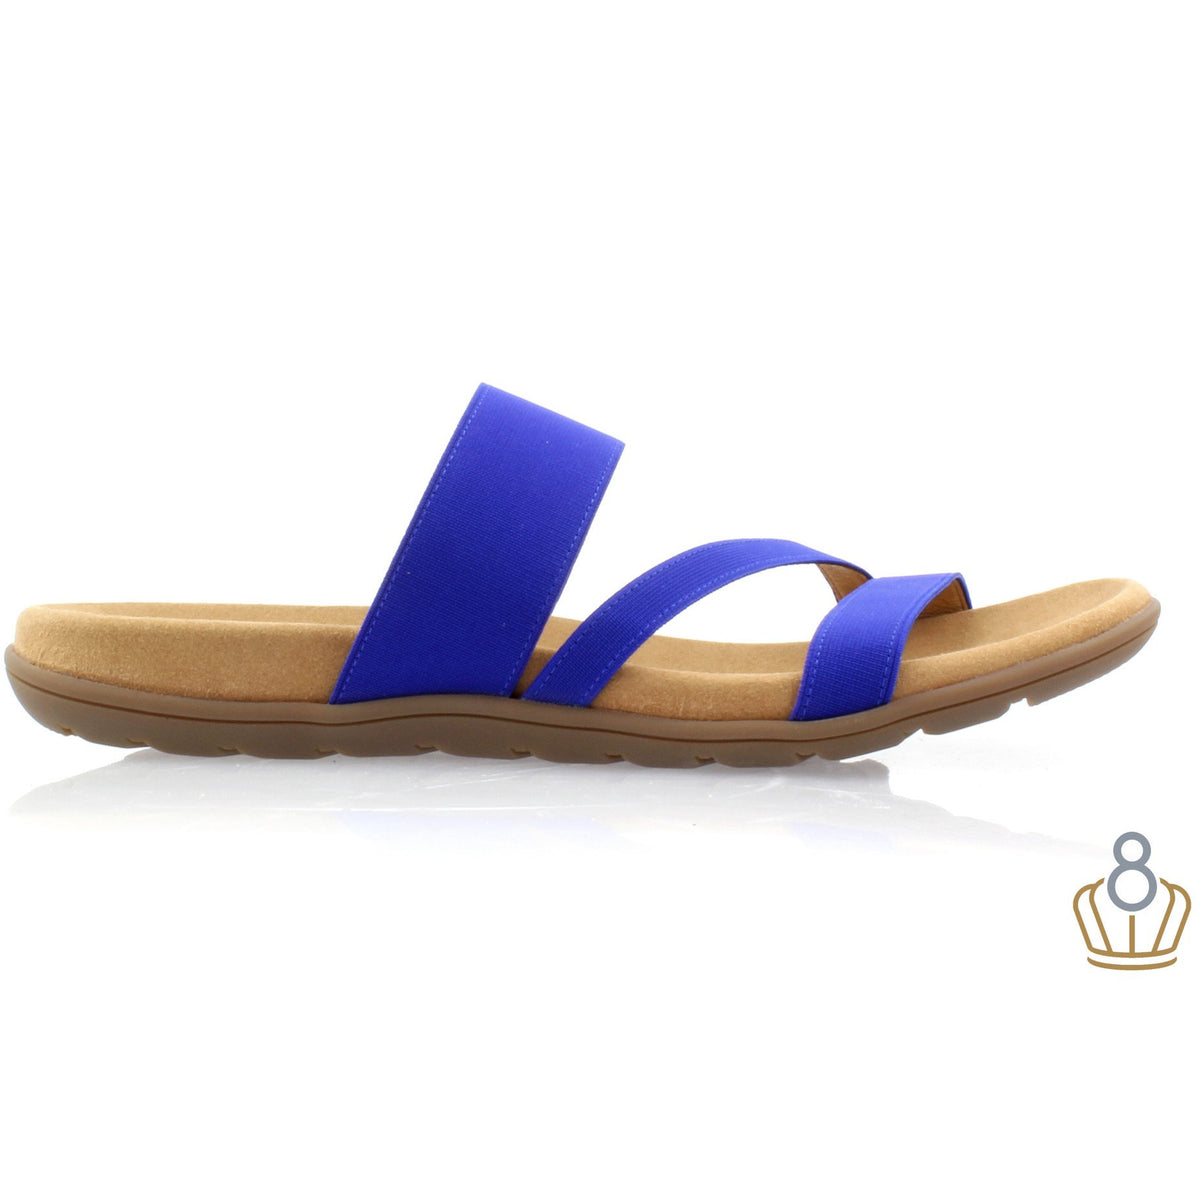 Tomcat Blue Sandals